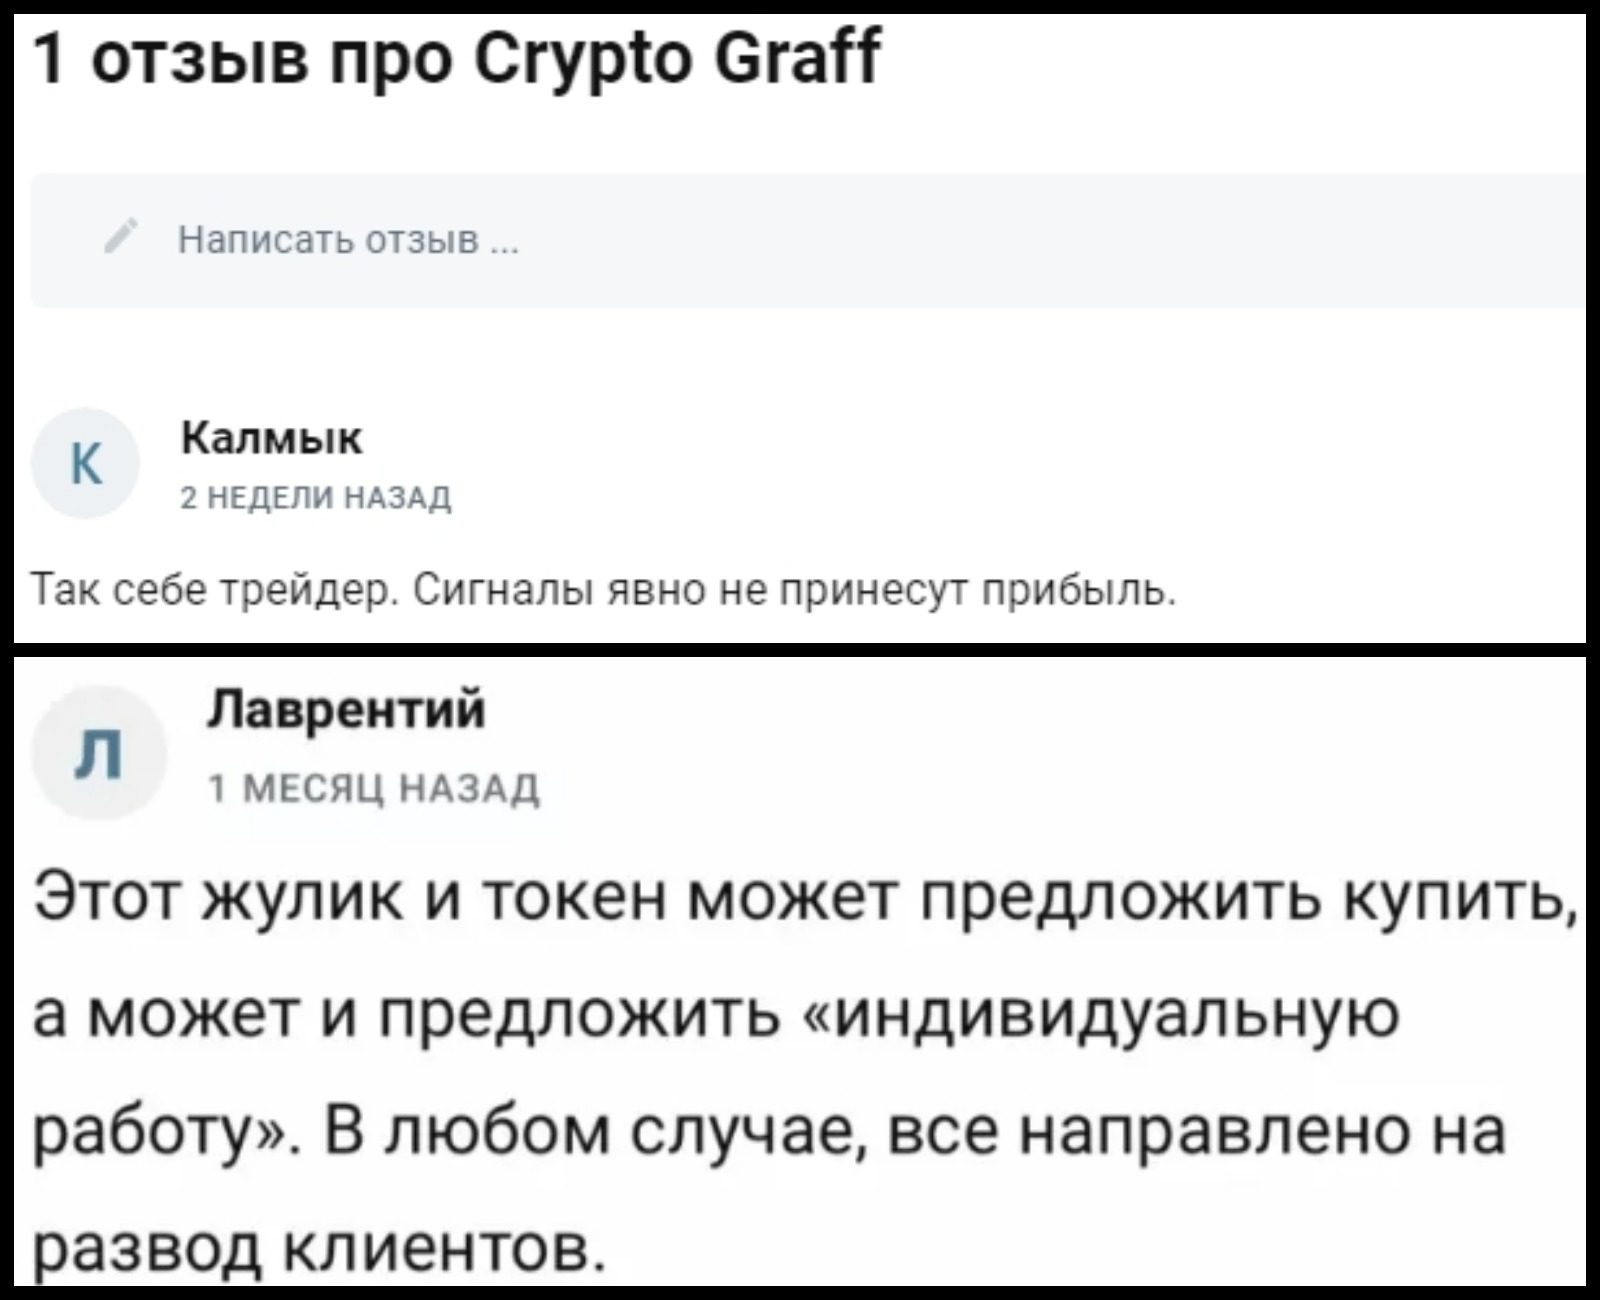 Отзывы о Крипто Граф в Телеграмм